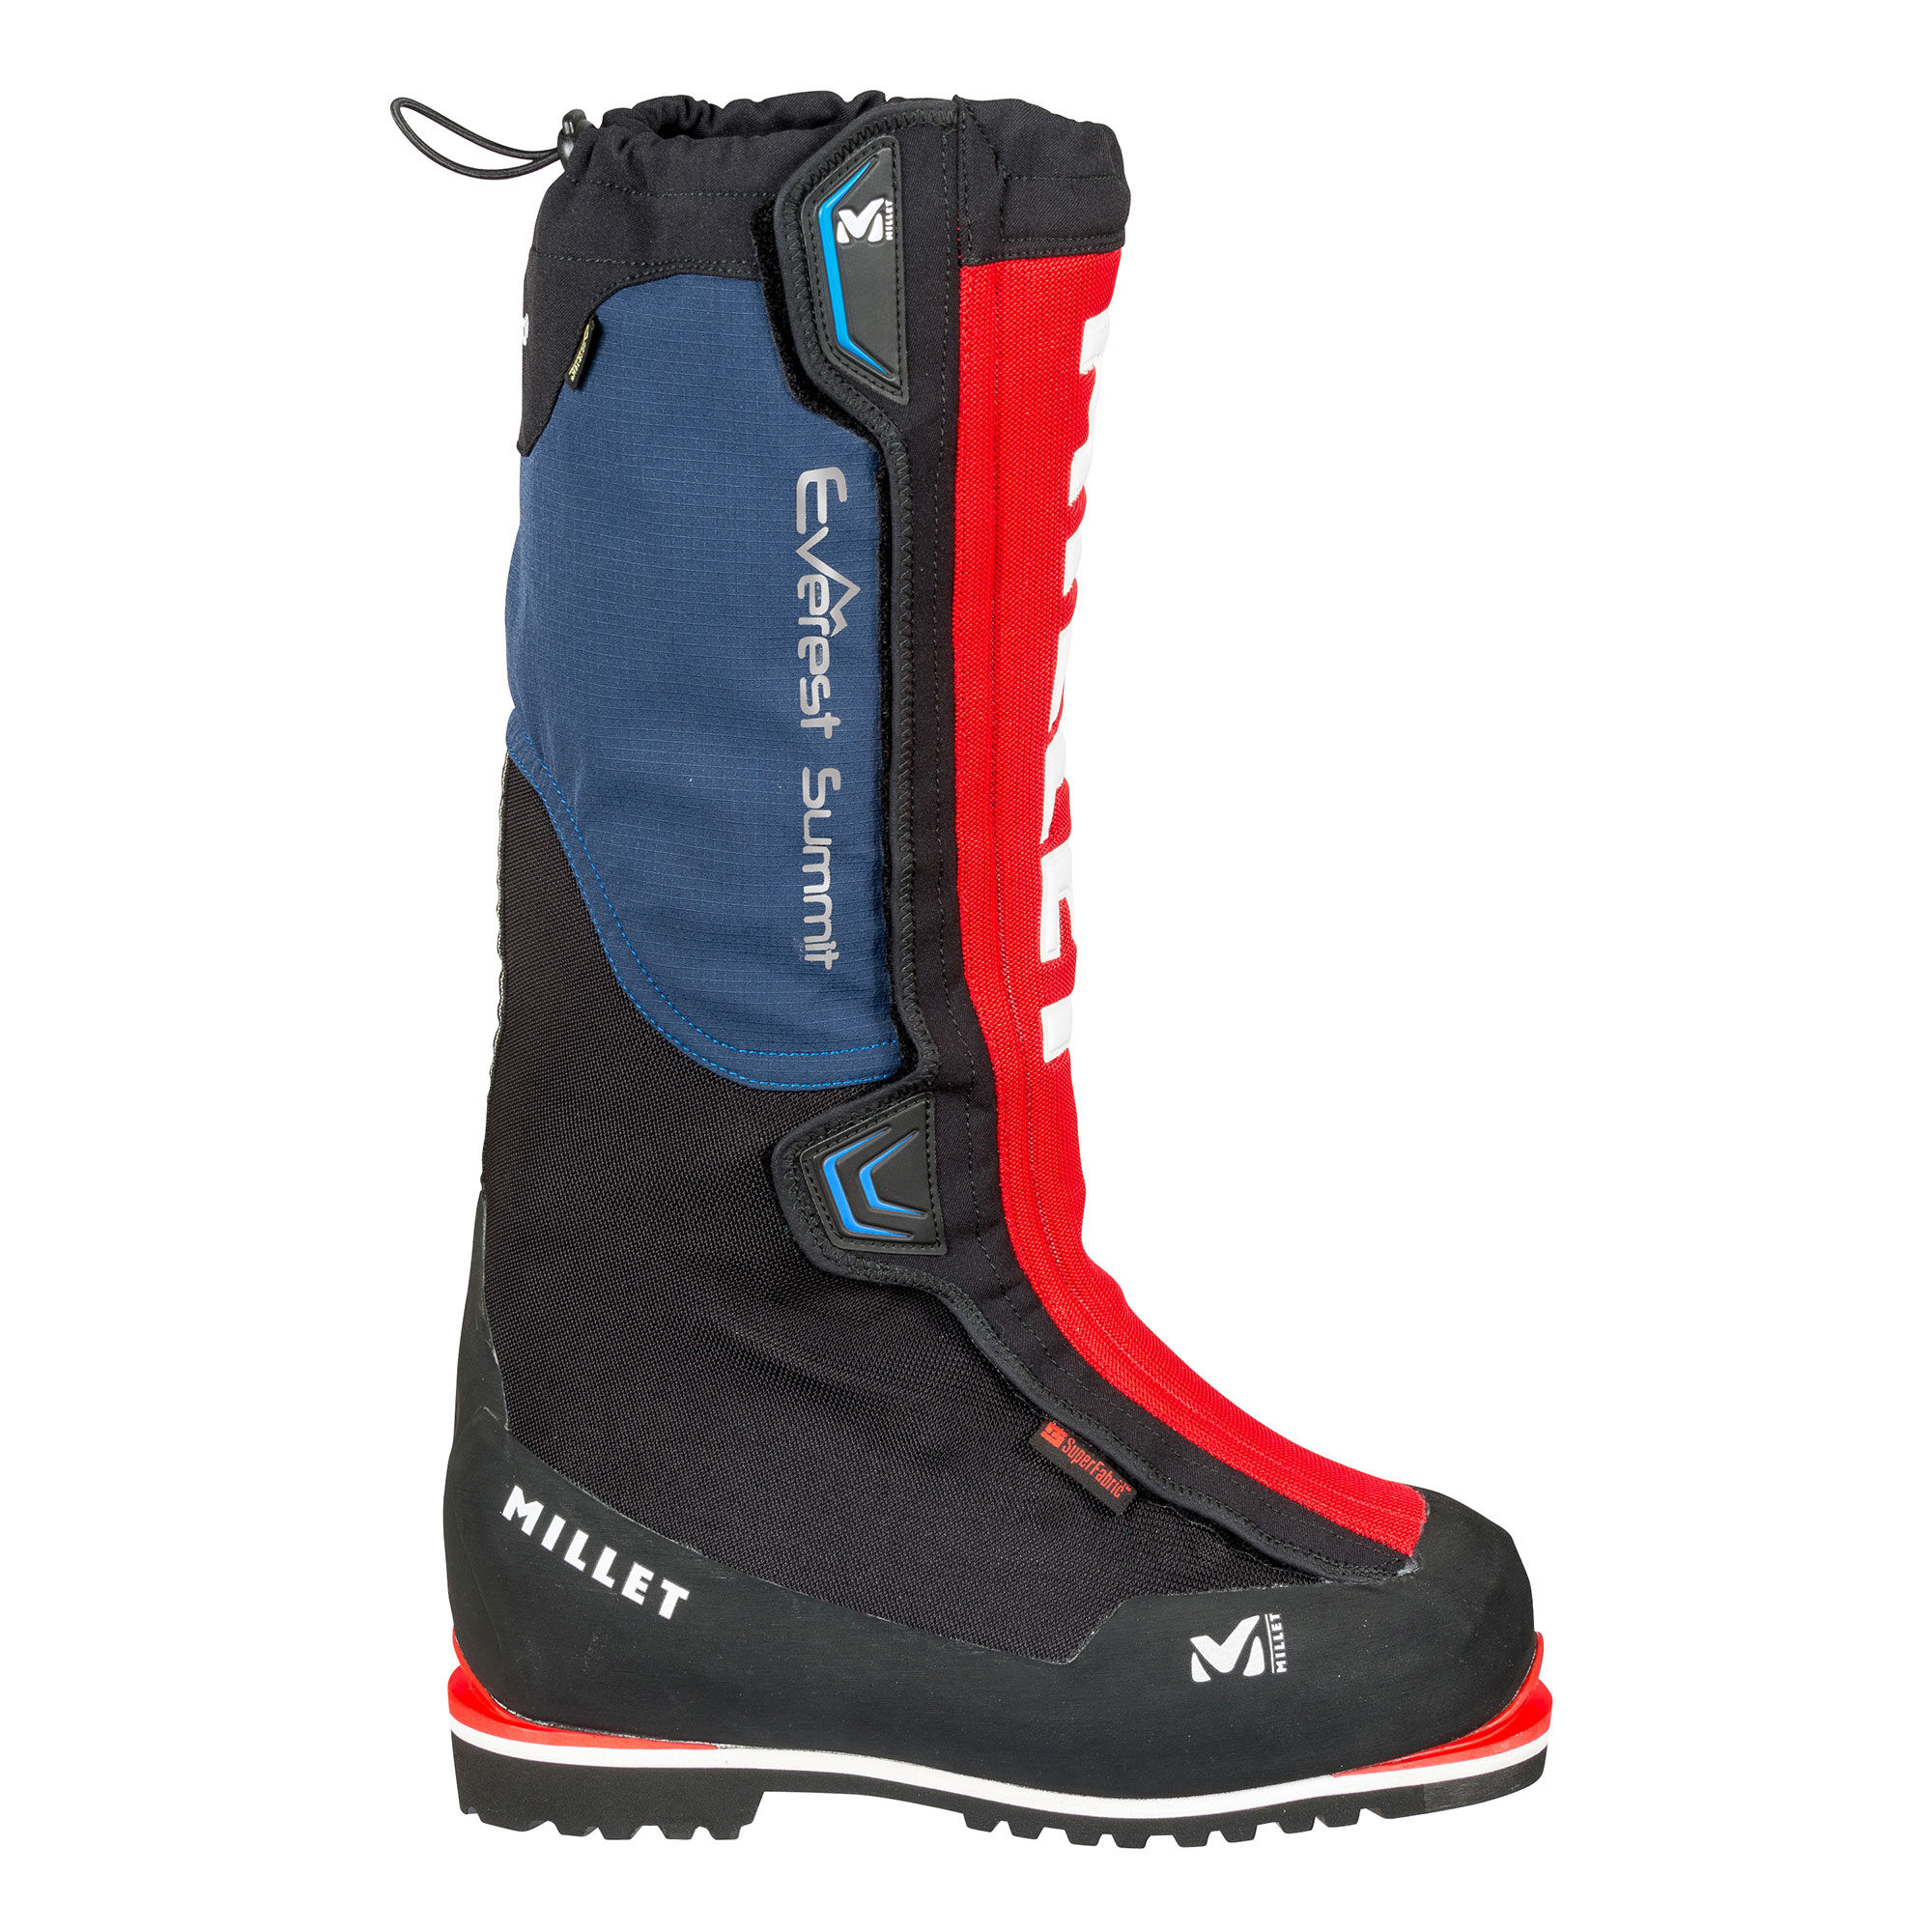 Millet - Everest Summit GTX - Mountaineering Boots